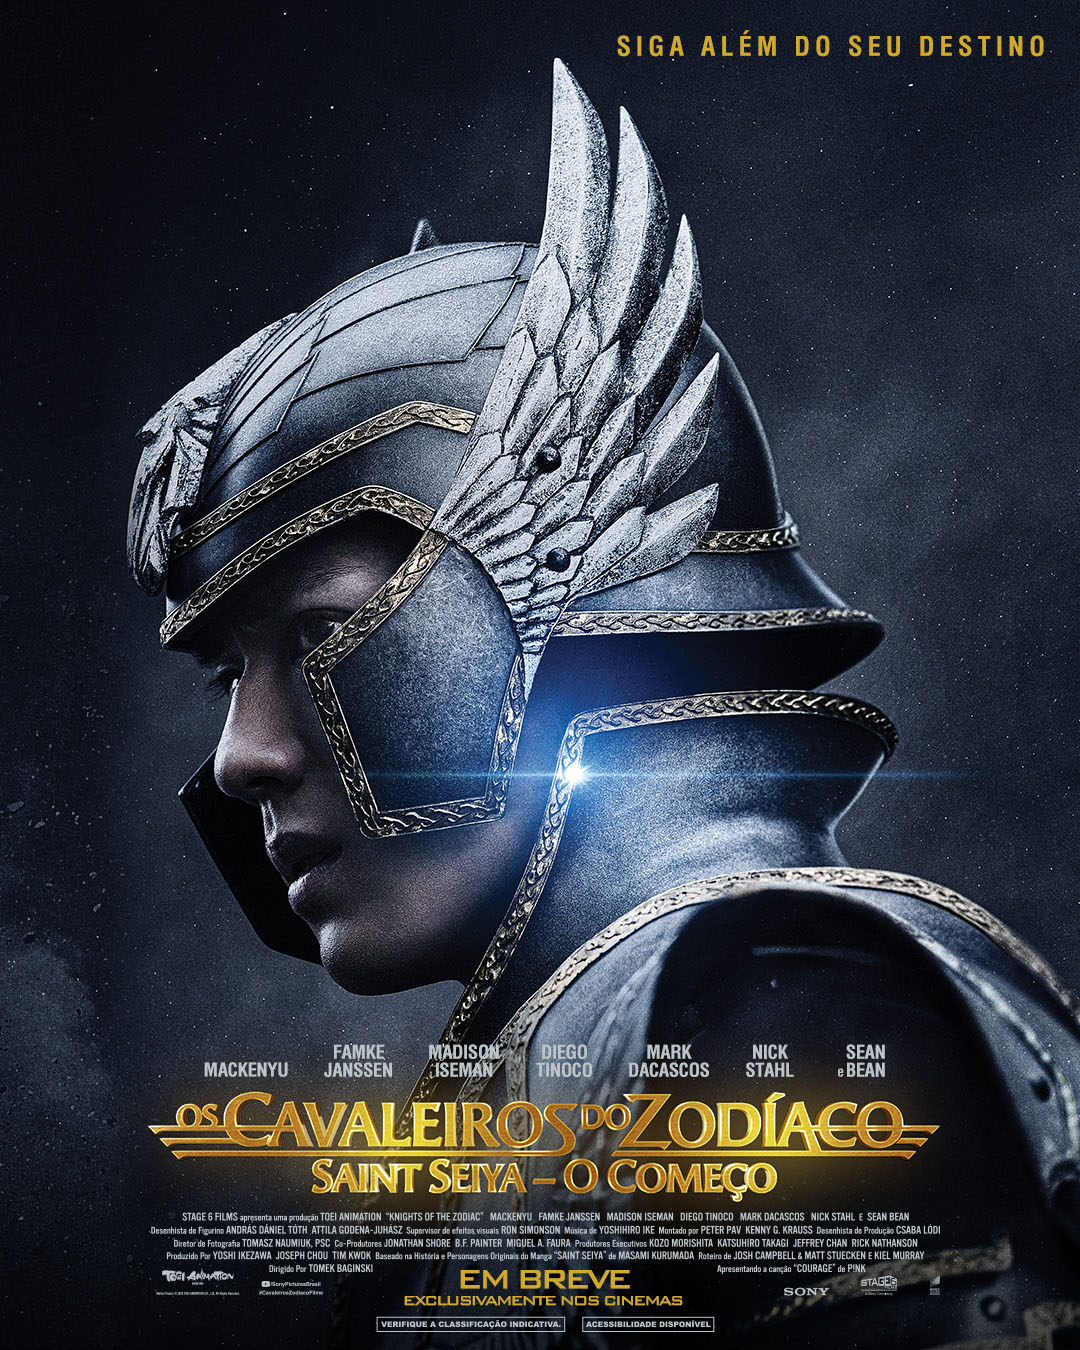 Cavaleiros do Zodíaco: filme será lançado no Brasil; confira o